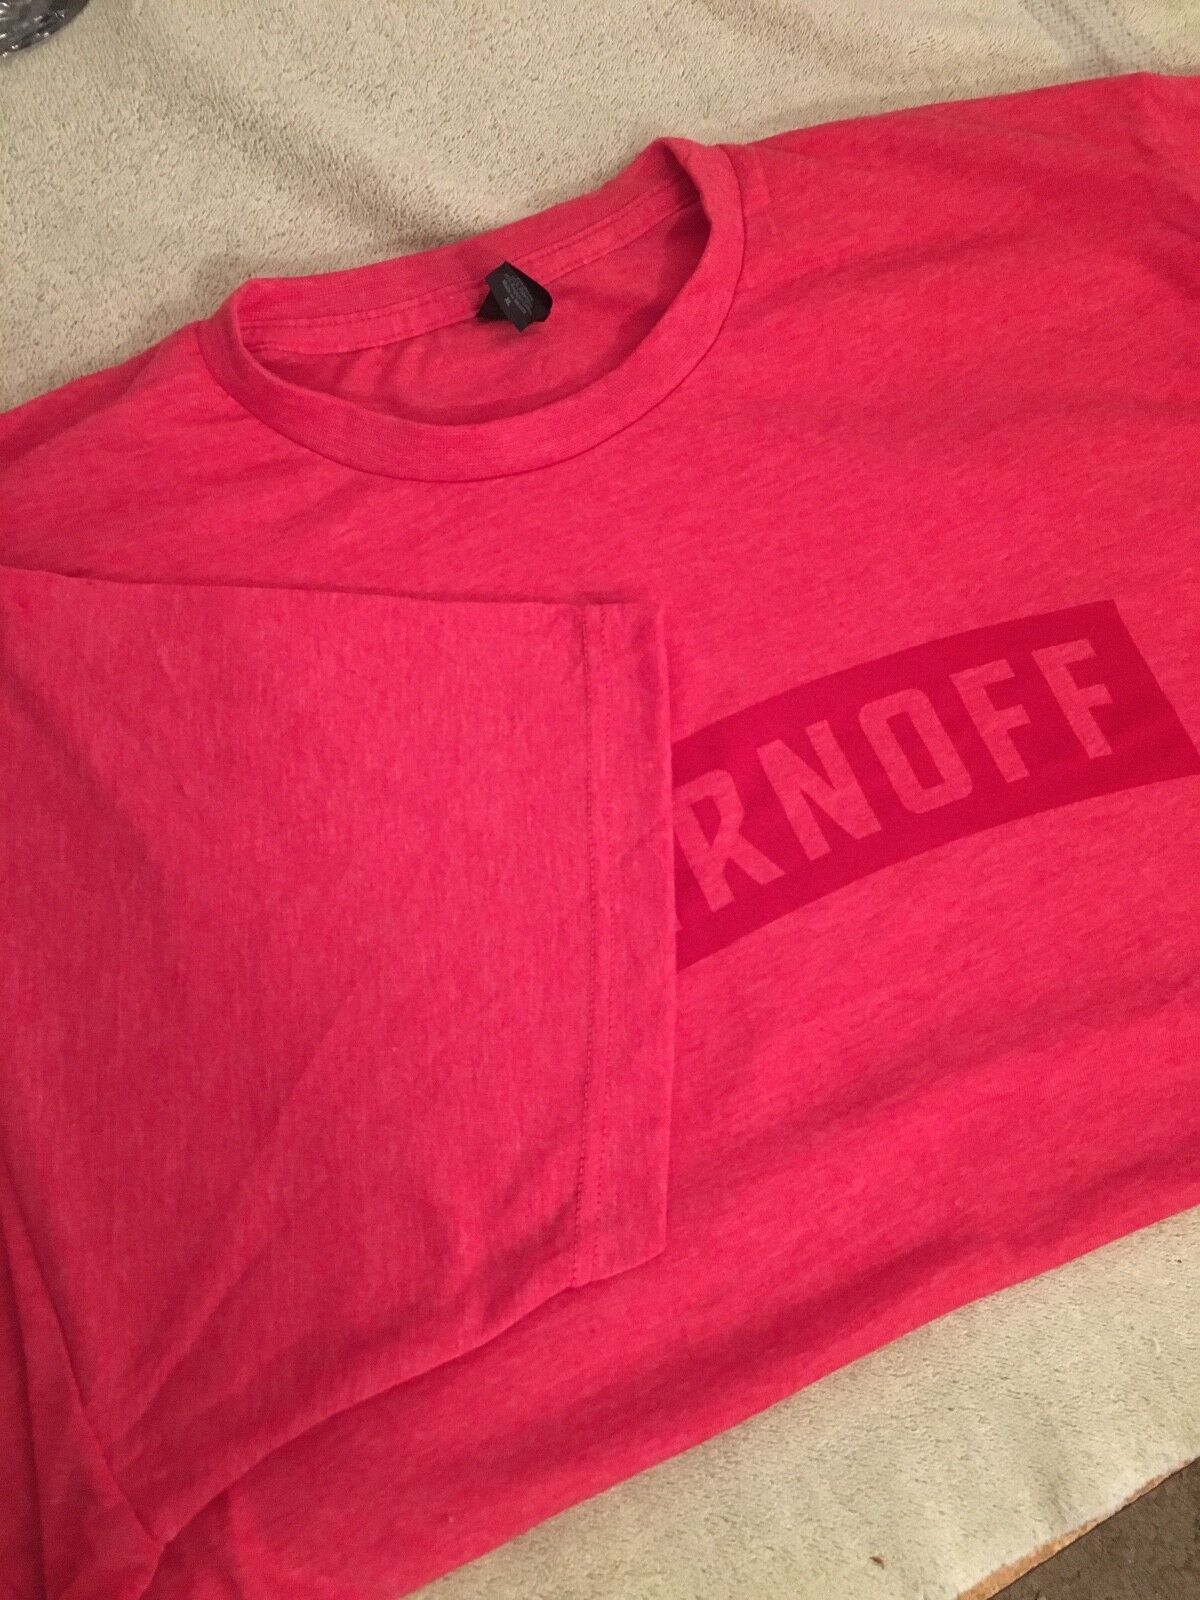 Smirnoff short sleeve shirt size XL Smirnoff - фотография #4